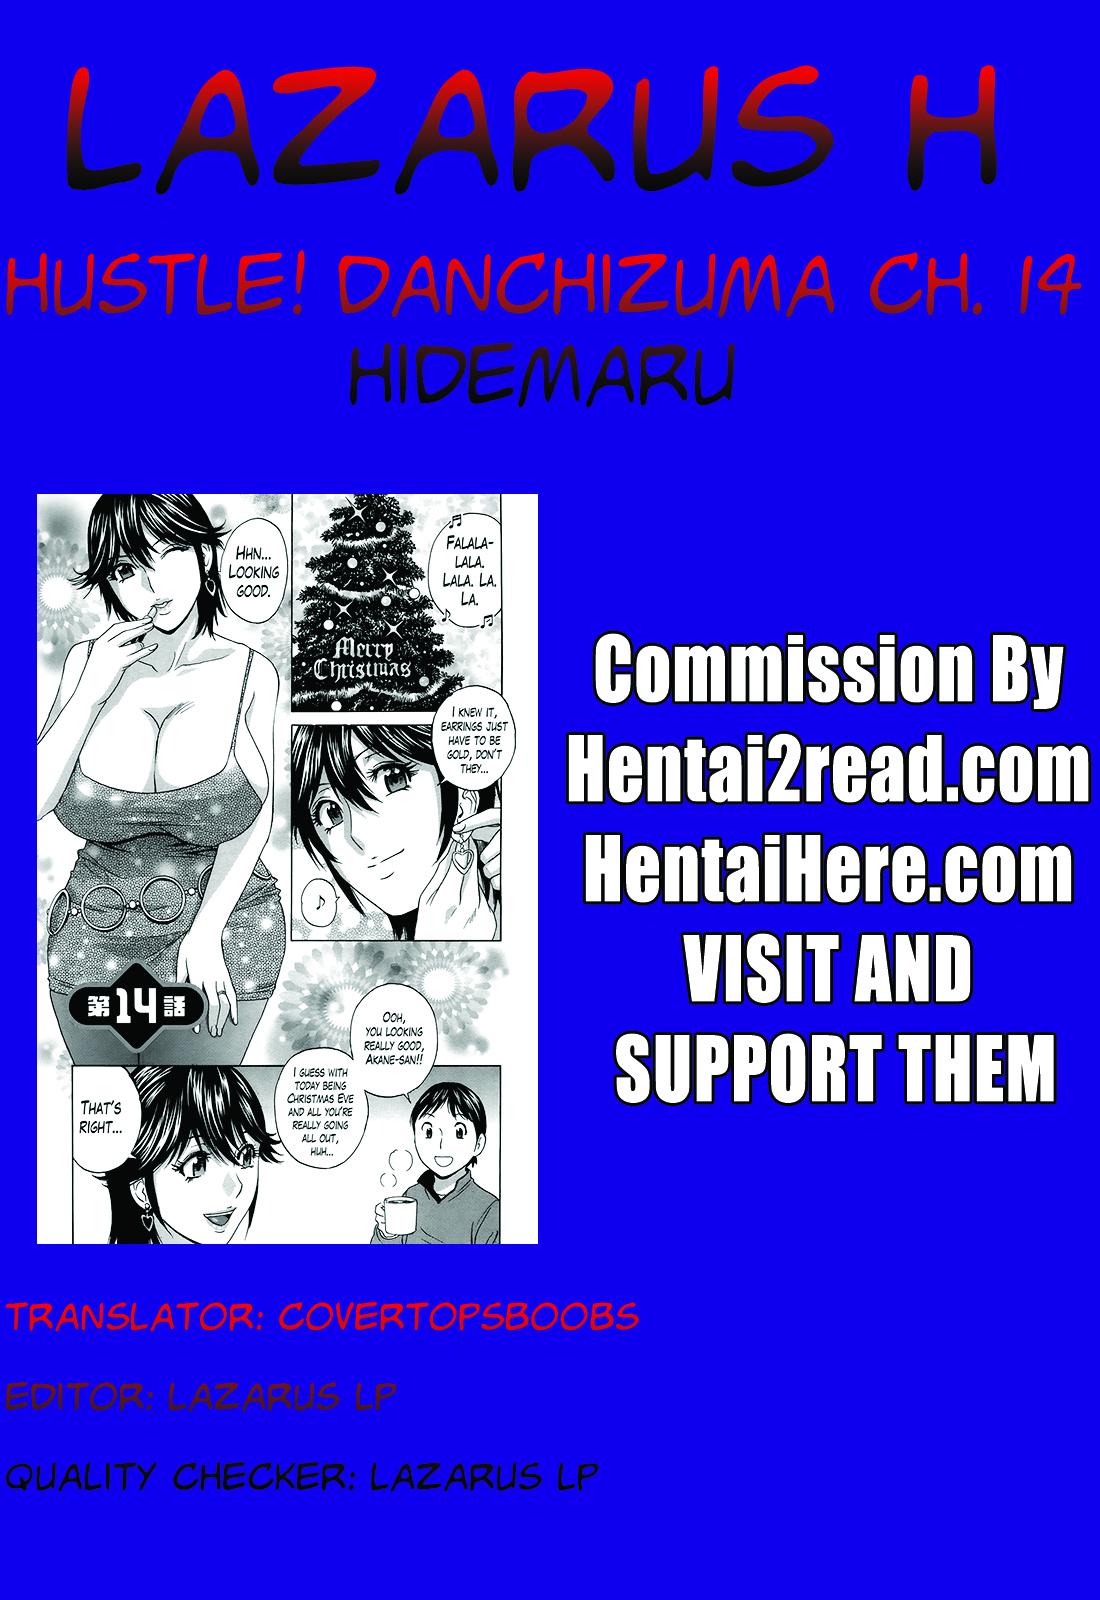 Chileno Hustle! Danchizuma Ch. 1-14 Blackwoman - Page 270